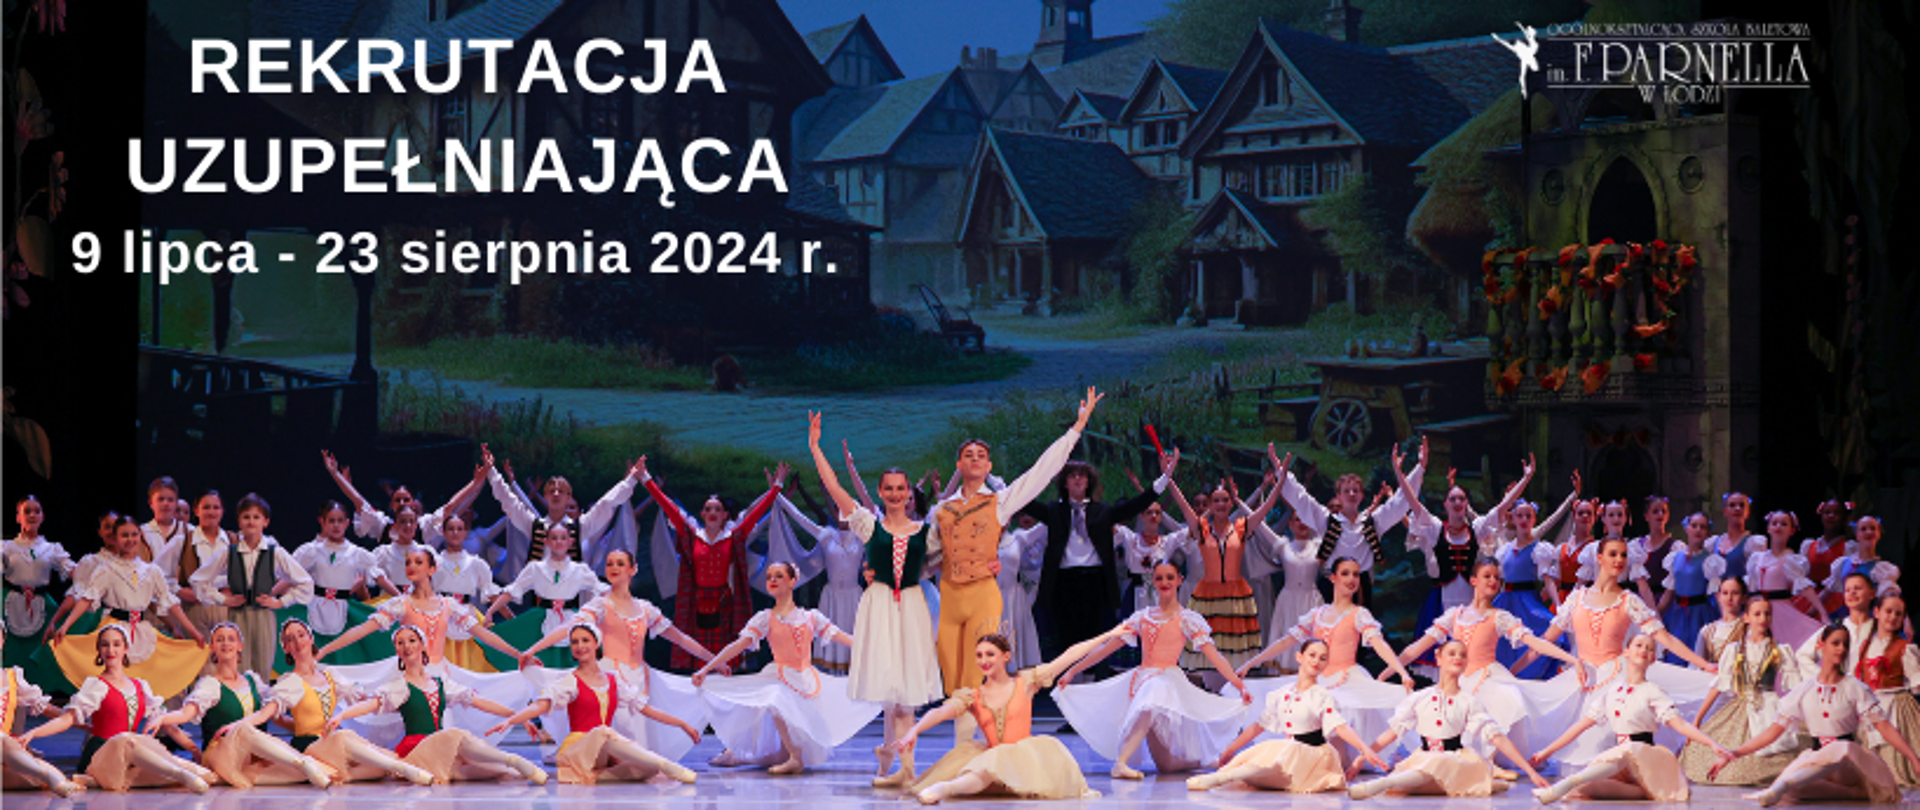 zdjęcie: uczniowie szkoły baletowej w Łodzi w scenie finałowej baletu "Coppelia". U góry logo szkoły oraz napis Rekrutacja uzupełniająca 9 lipca - 23 sierpnia 2024 r.